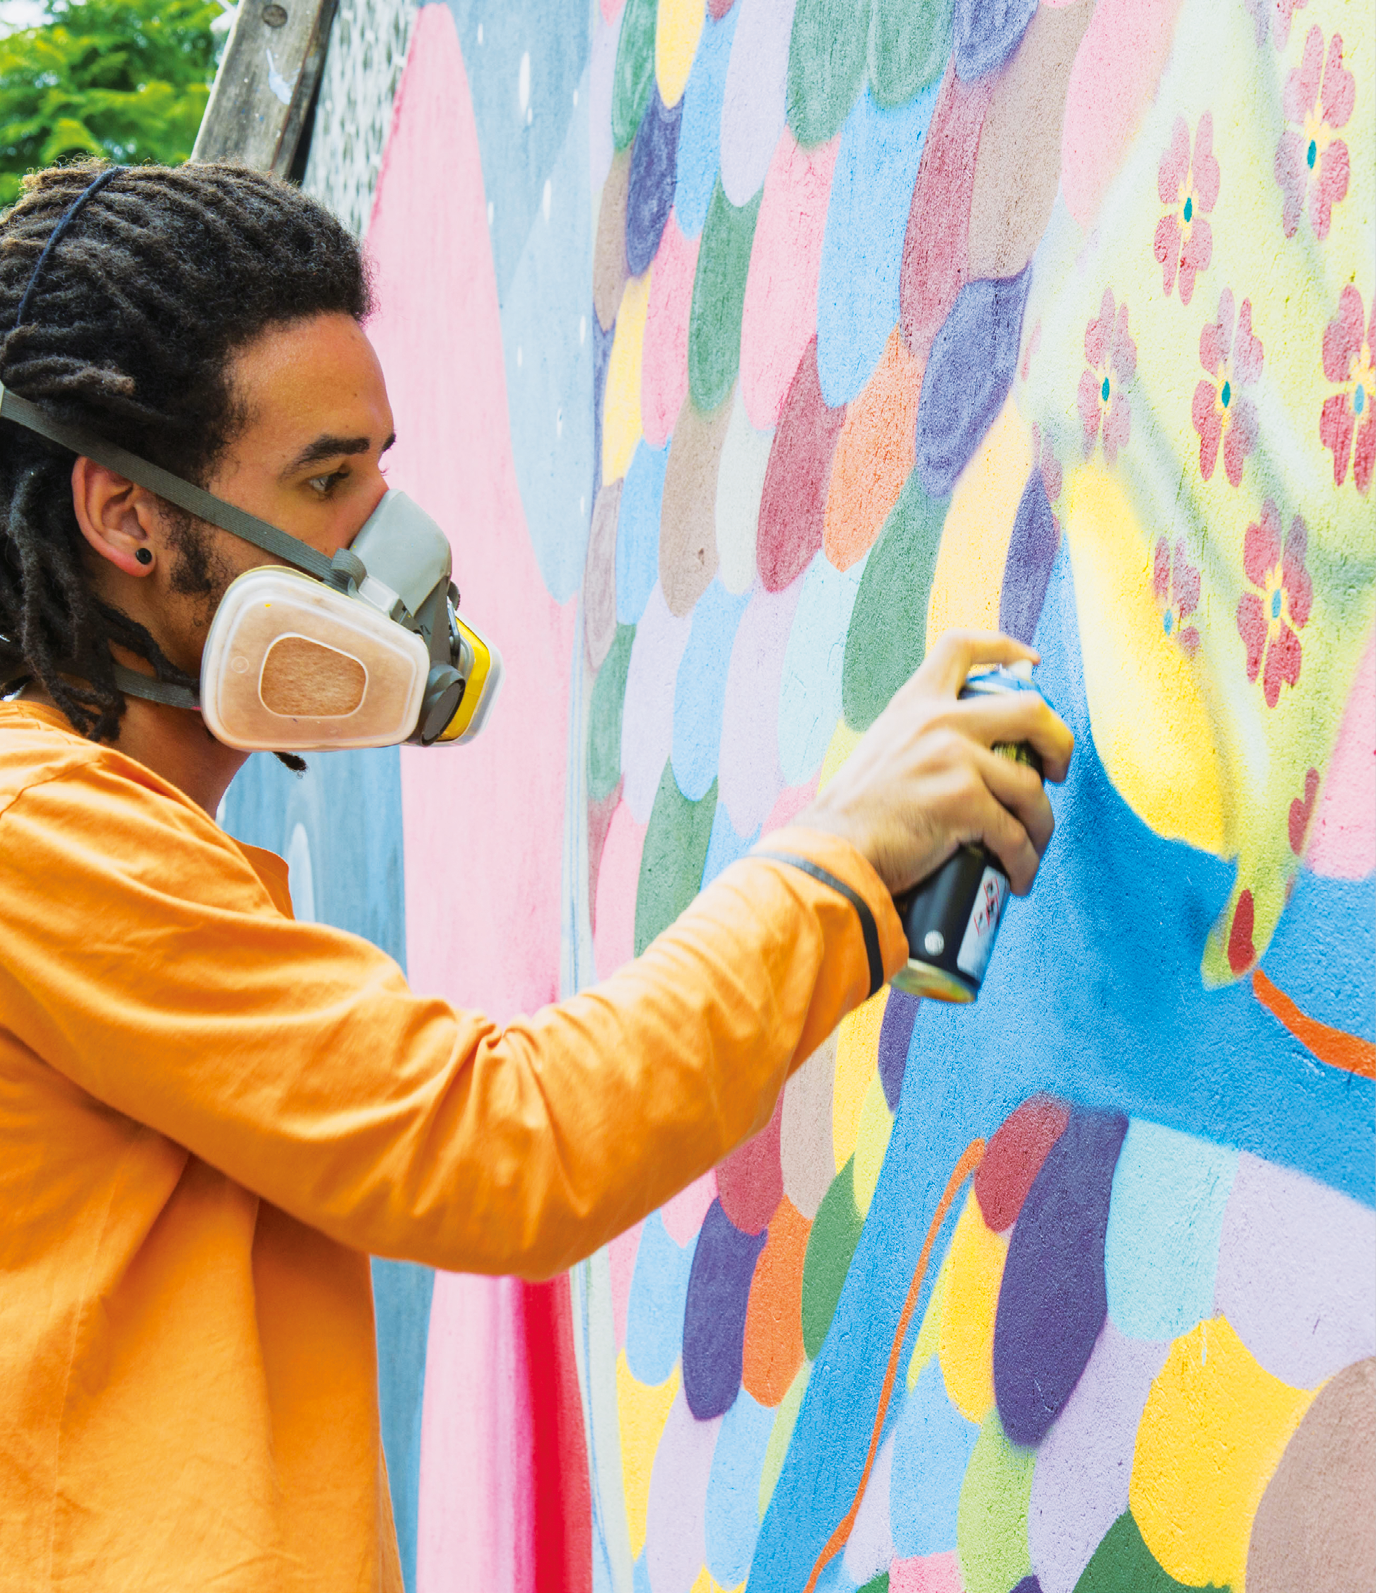 Fotografia. Um homem de cabelo penteado em tranças, usando blusa laranja e uma máscara protetora cinza sobre o nariz e a boca. Ele está segurando uma lata de spray e apontando-a na direção de um muro colorido.